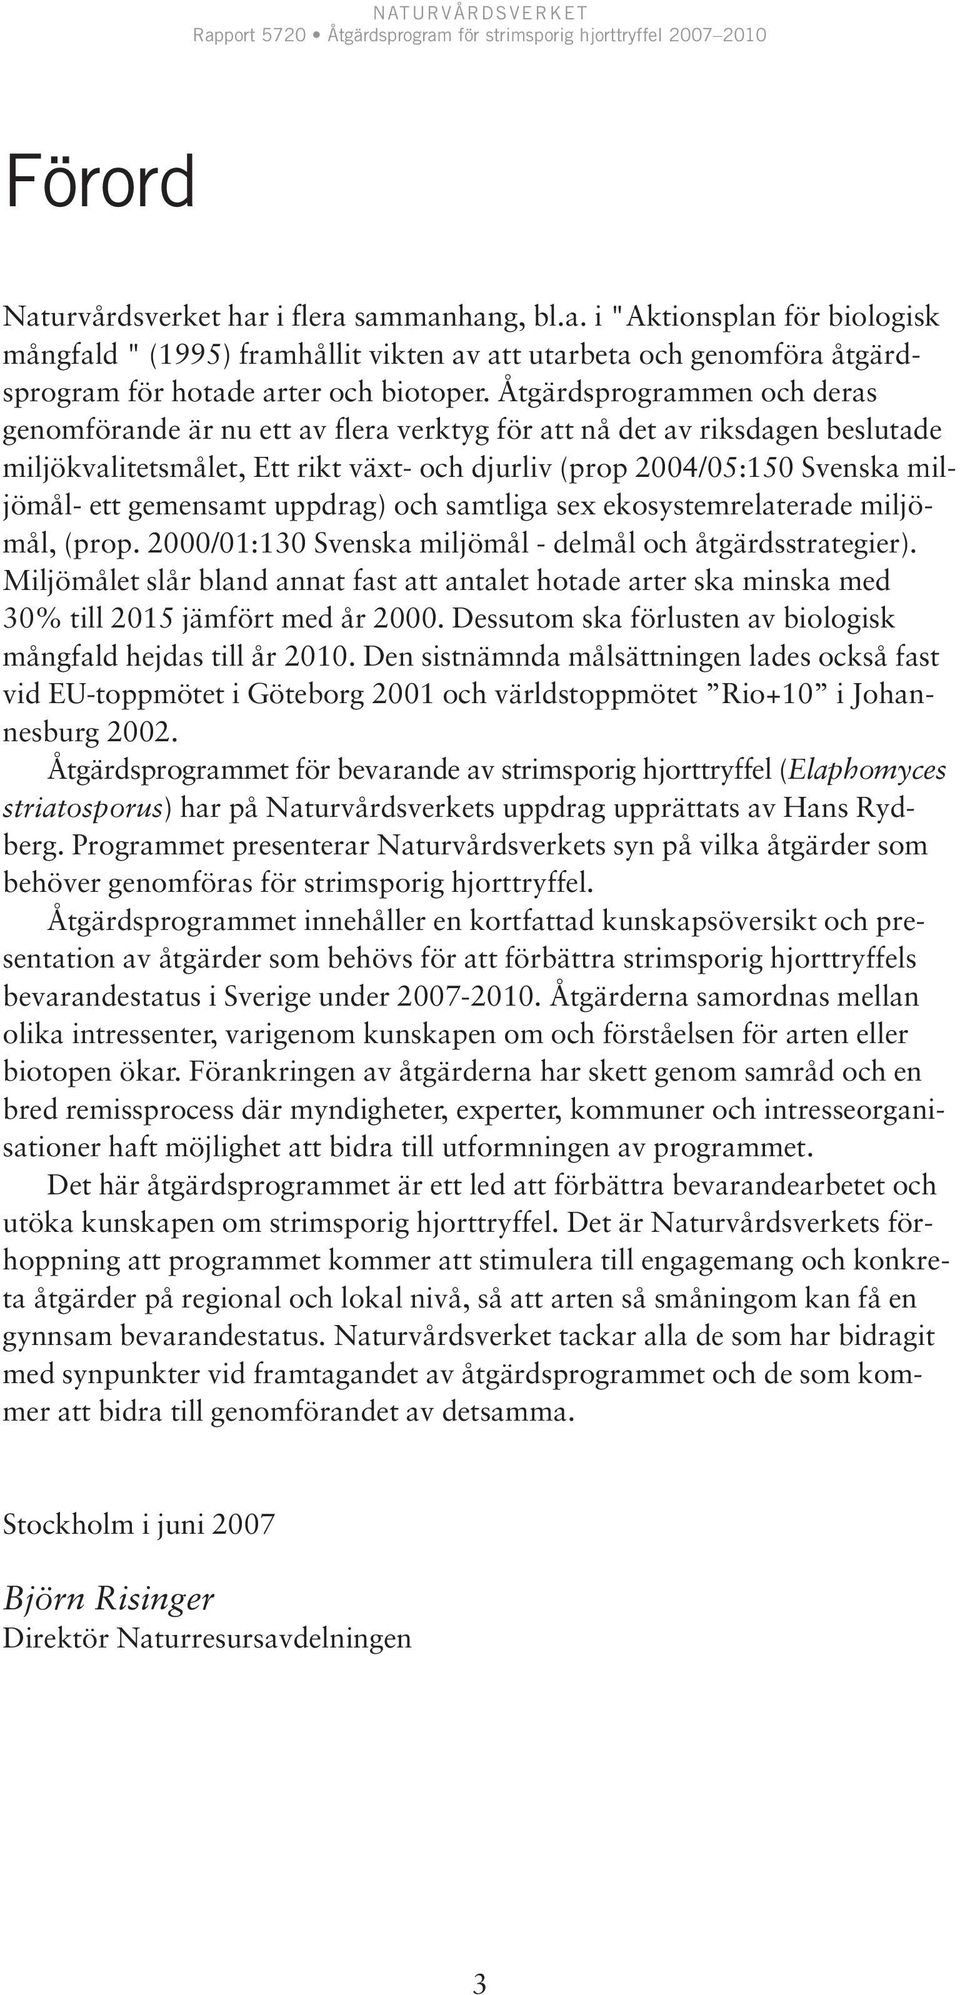 gemensamt uppdrag) och samtliga sex ekosystemrelaterade miljömål, (prop. 2000/01:130 Svenska miljömål - delmål och åtgärdsstrategier).